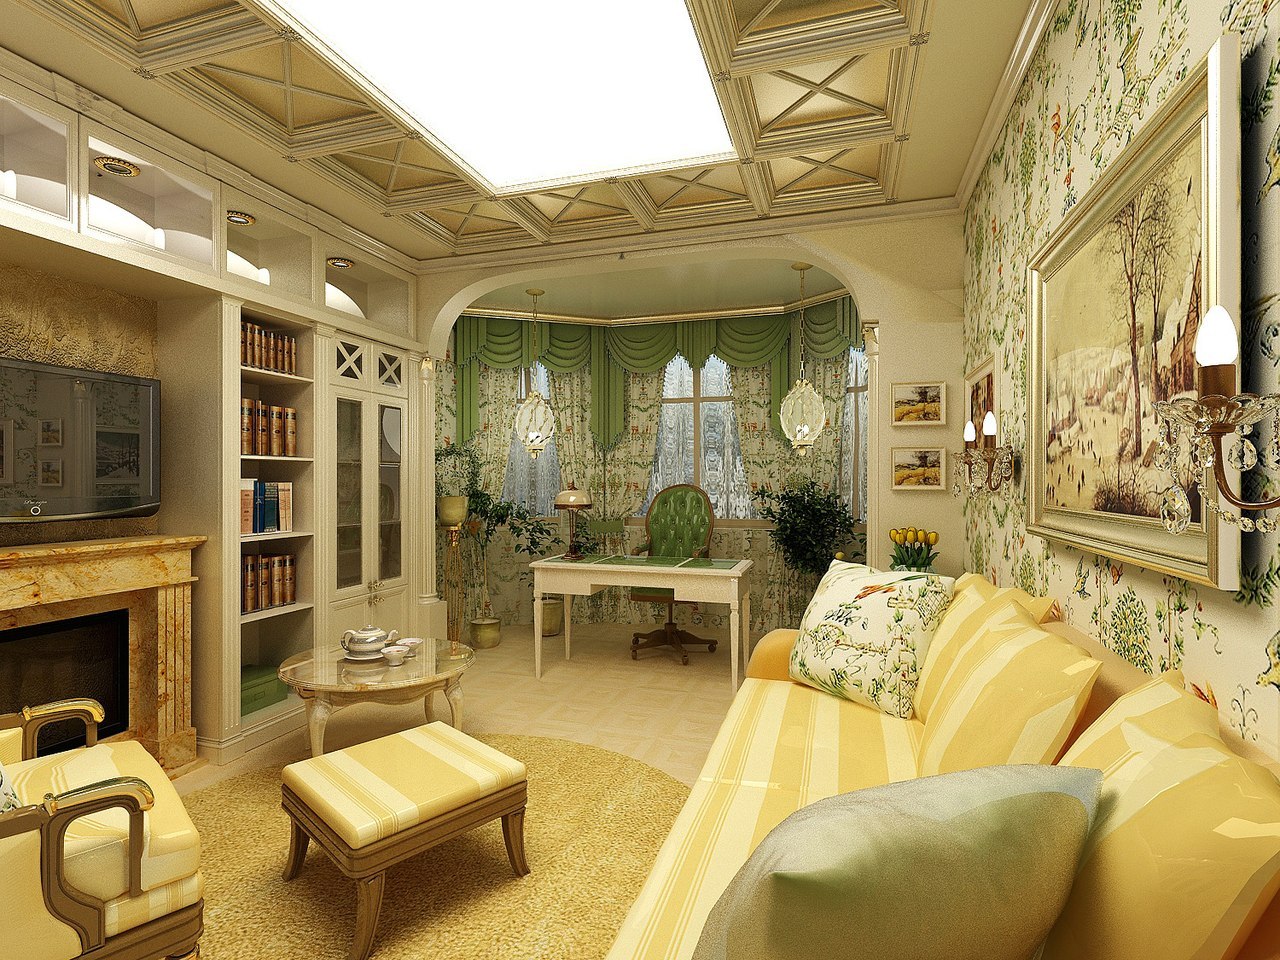 Дизайн комнаты французский стиль » Картинки и фотографии дизайна .